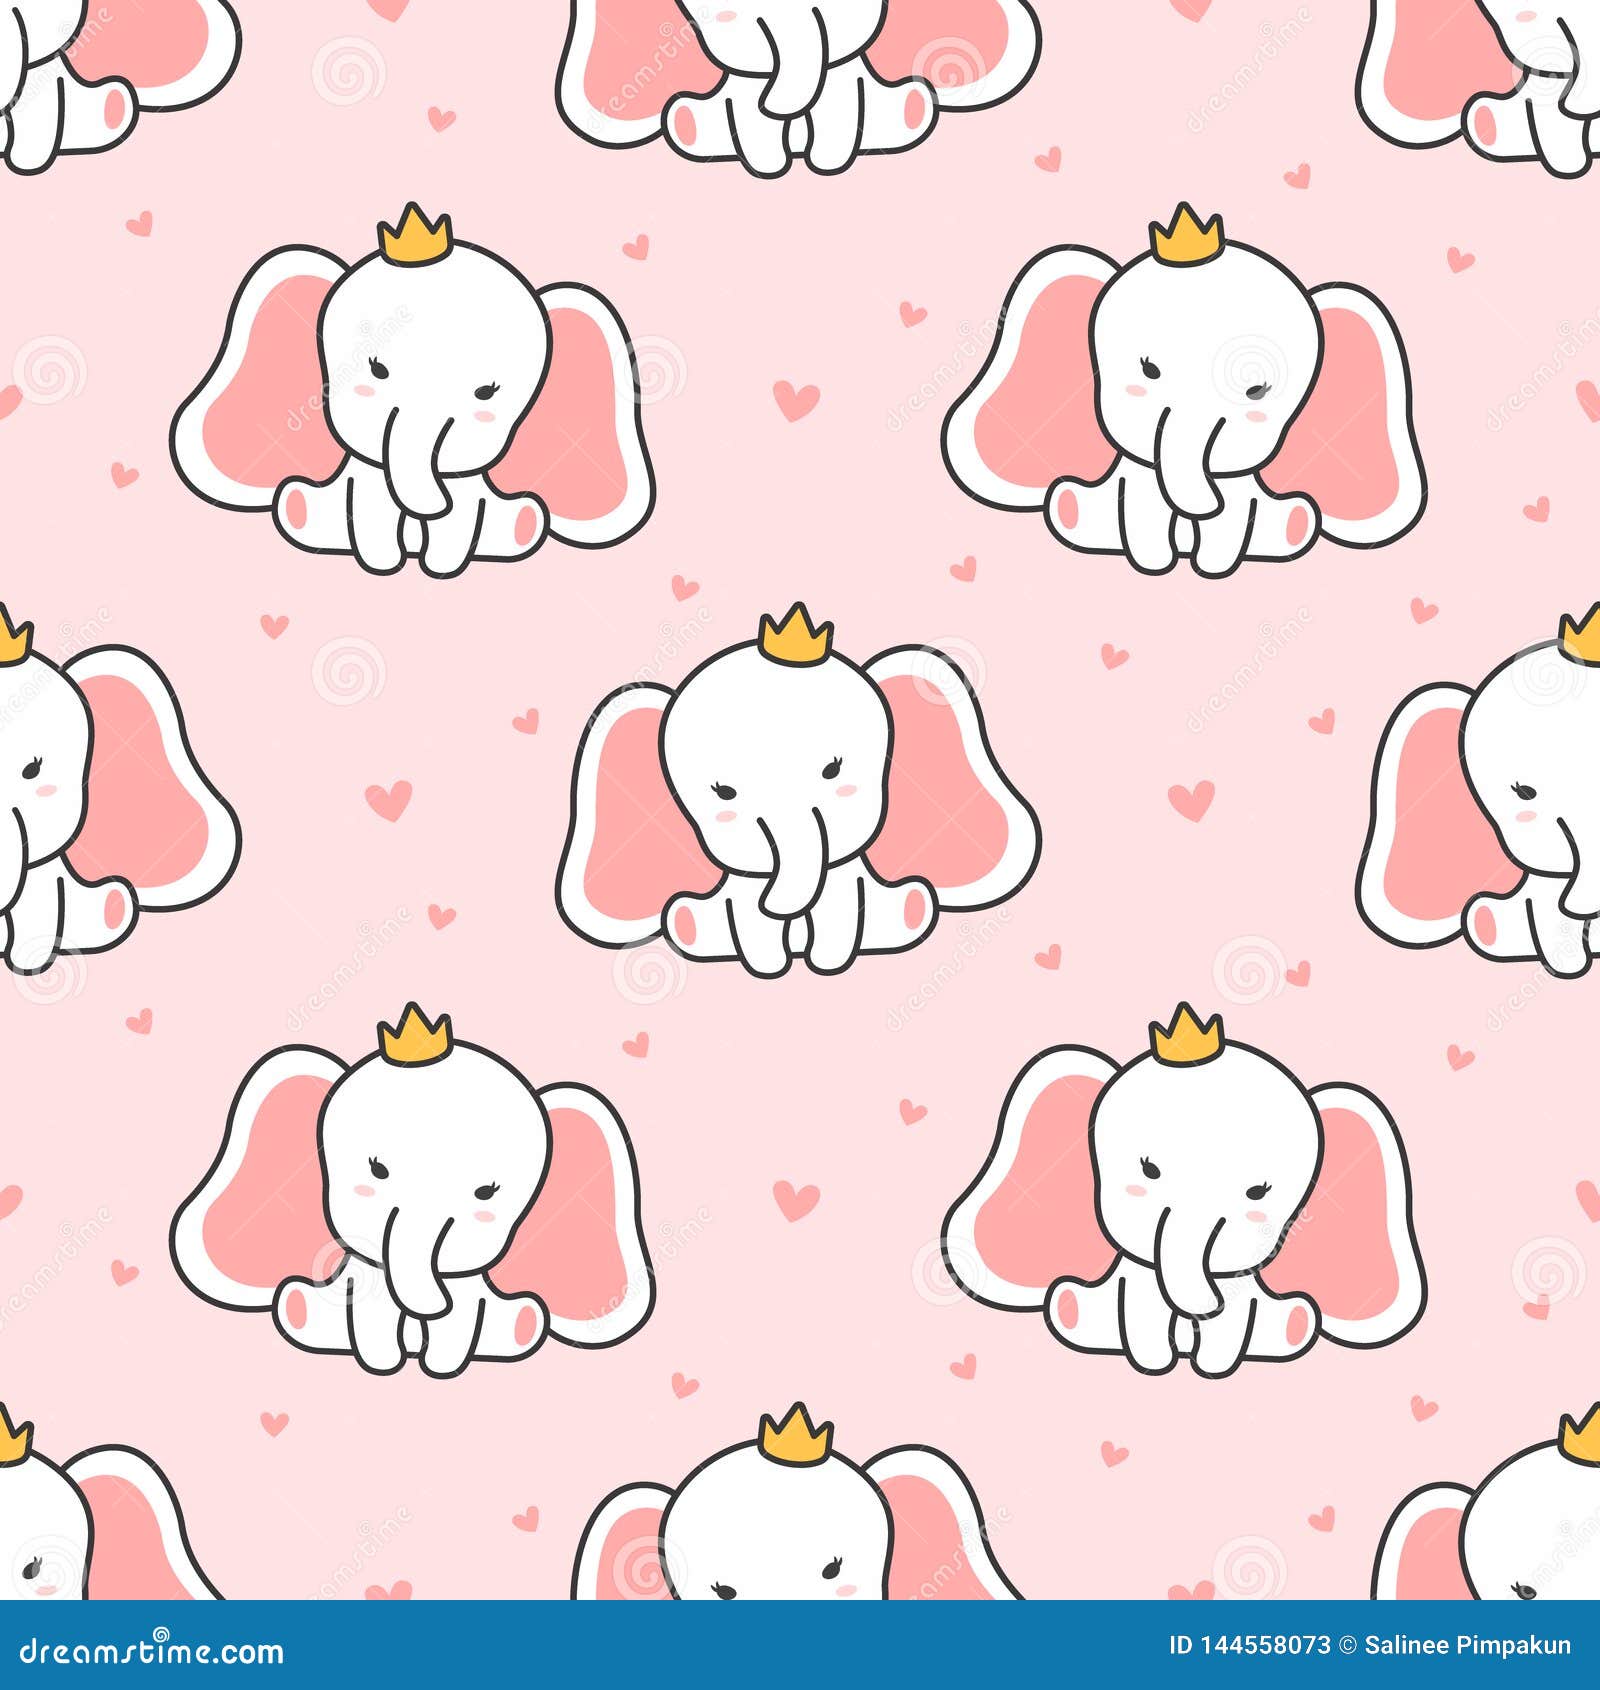 Cute Wallpaper Elephant gambar ke 13